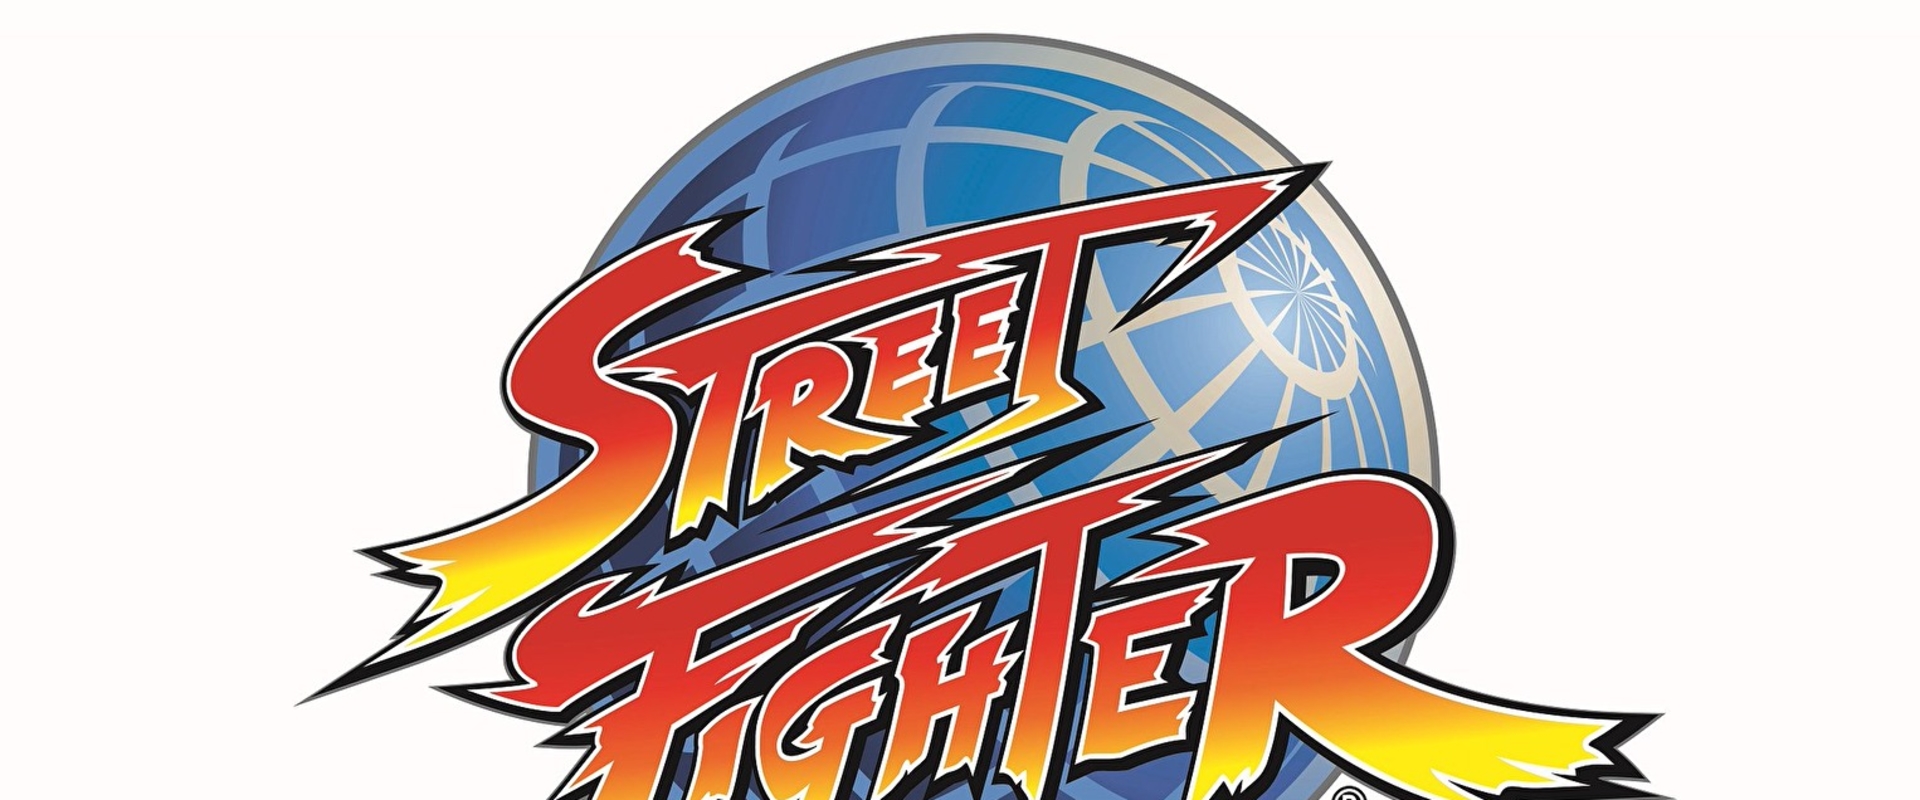 Igazán különleges Street Fighter gyűjtemény érkezik